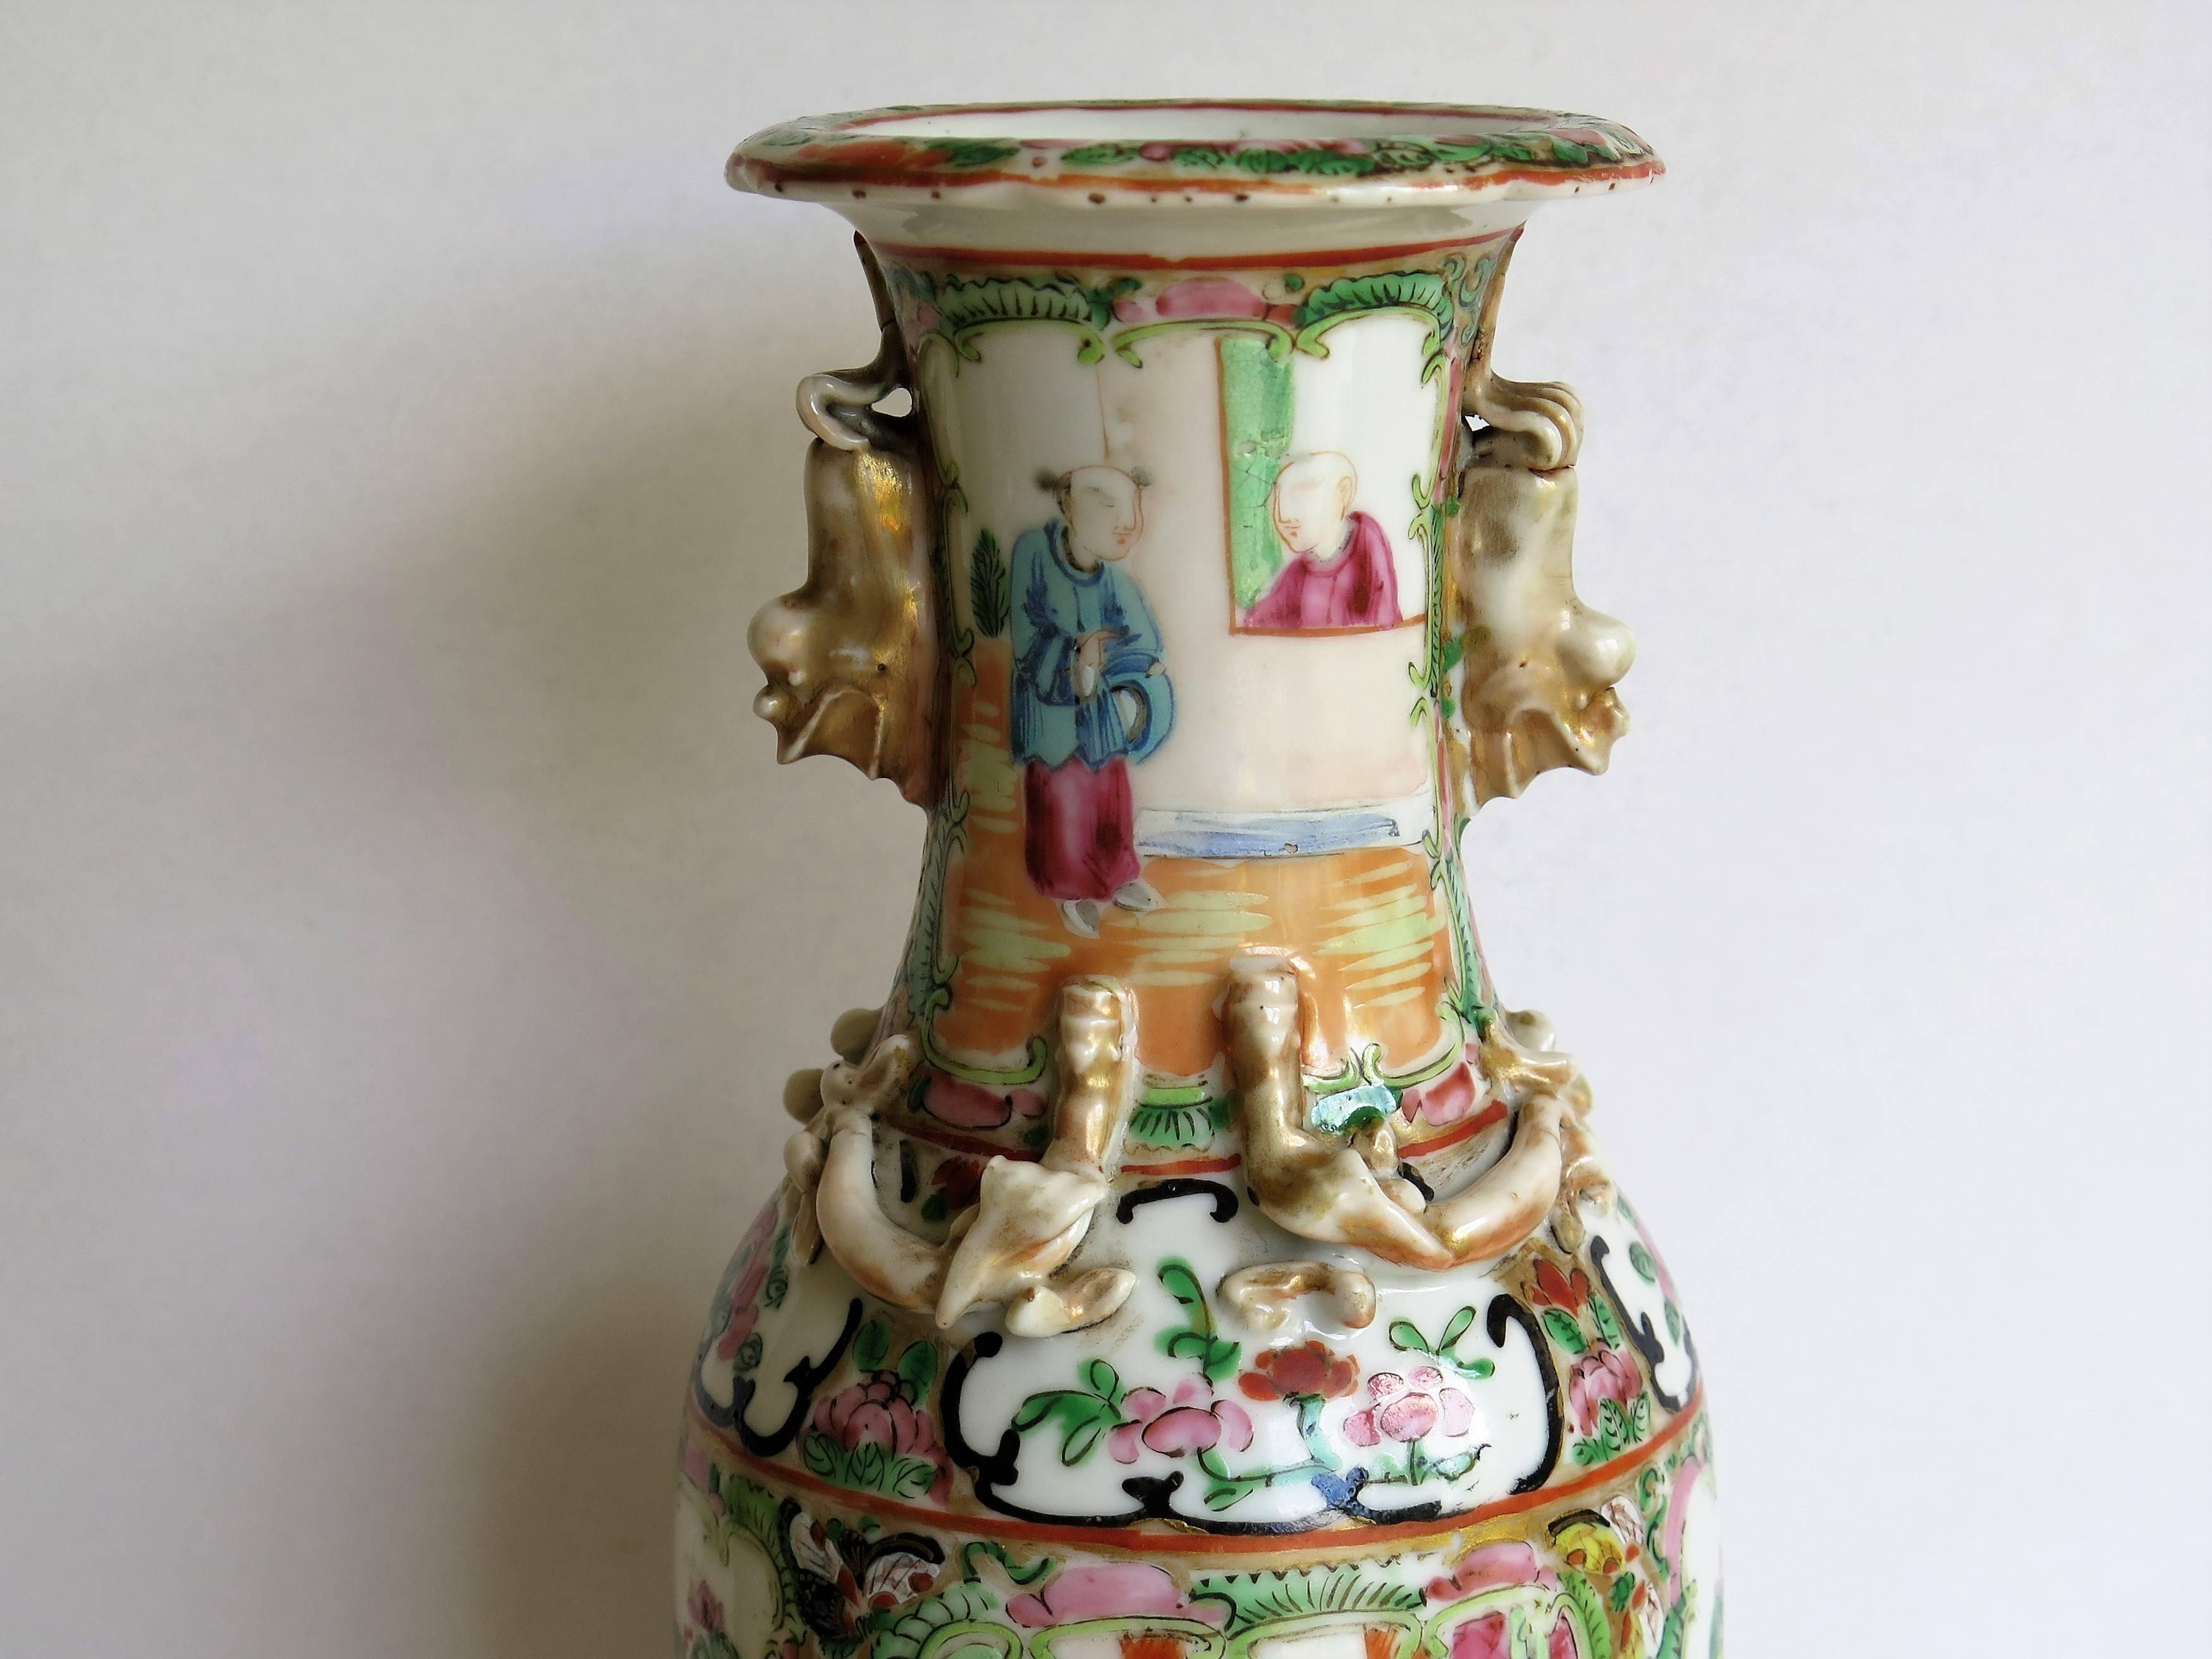 Dies ist eine sehr dekorative chinesische Export, Porzellan, Rose Medaillon Vase, die wir datieren auf das 19. Jahrhundert, Qing-Dynastie, ca. 1860.

Die Vase hat eine Balusterform mit ausgestelltem Rand und ist mit zwei vergoldeten Foo Dog Henkeln